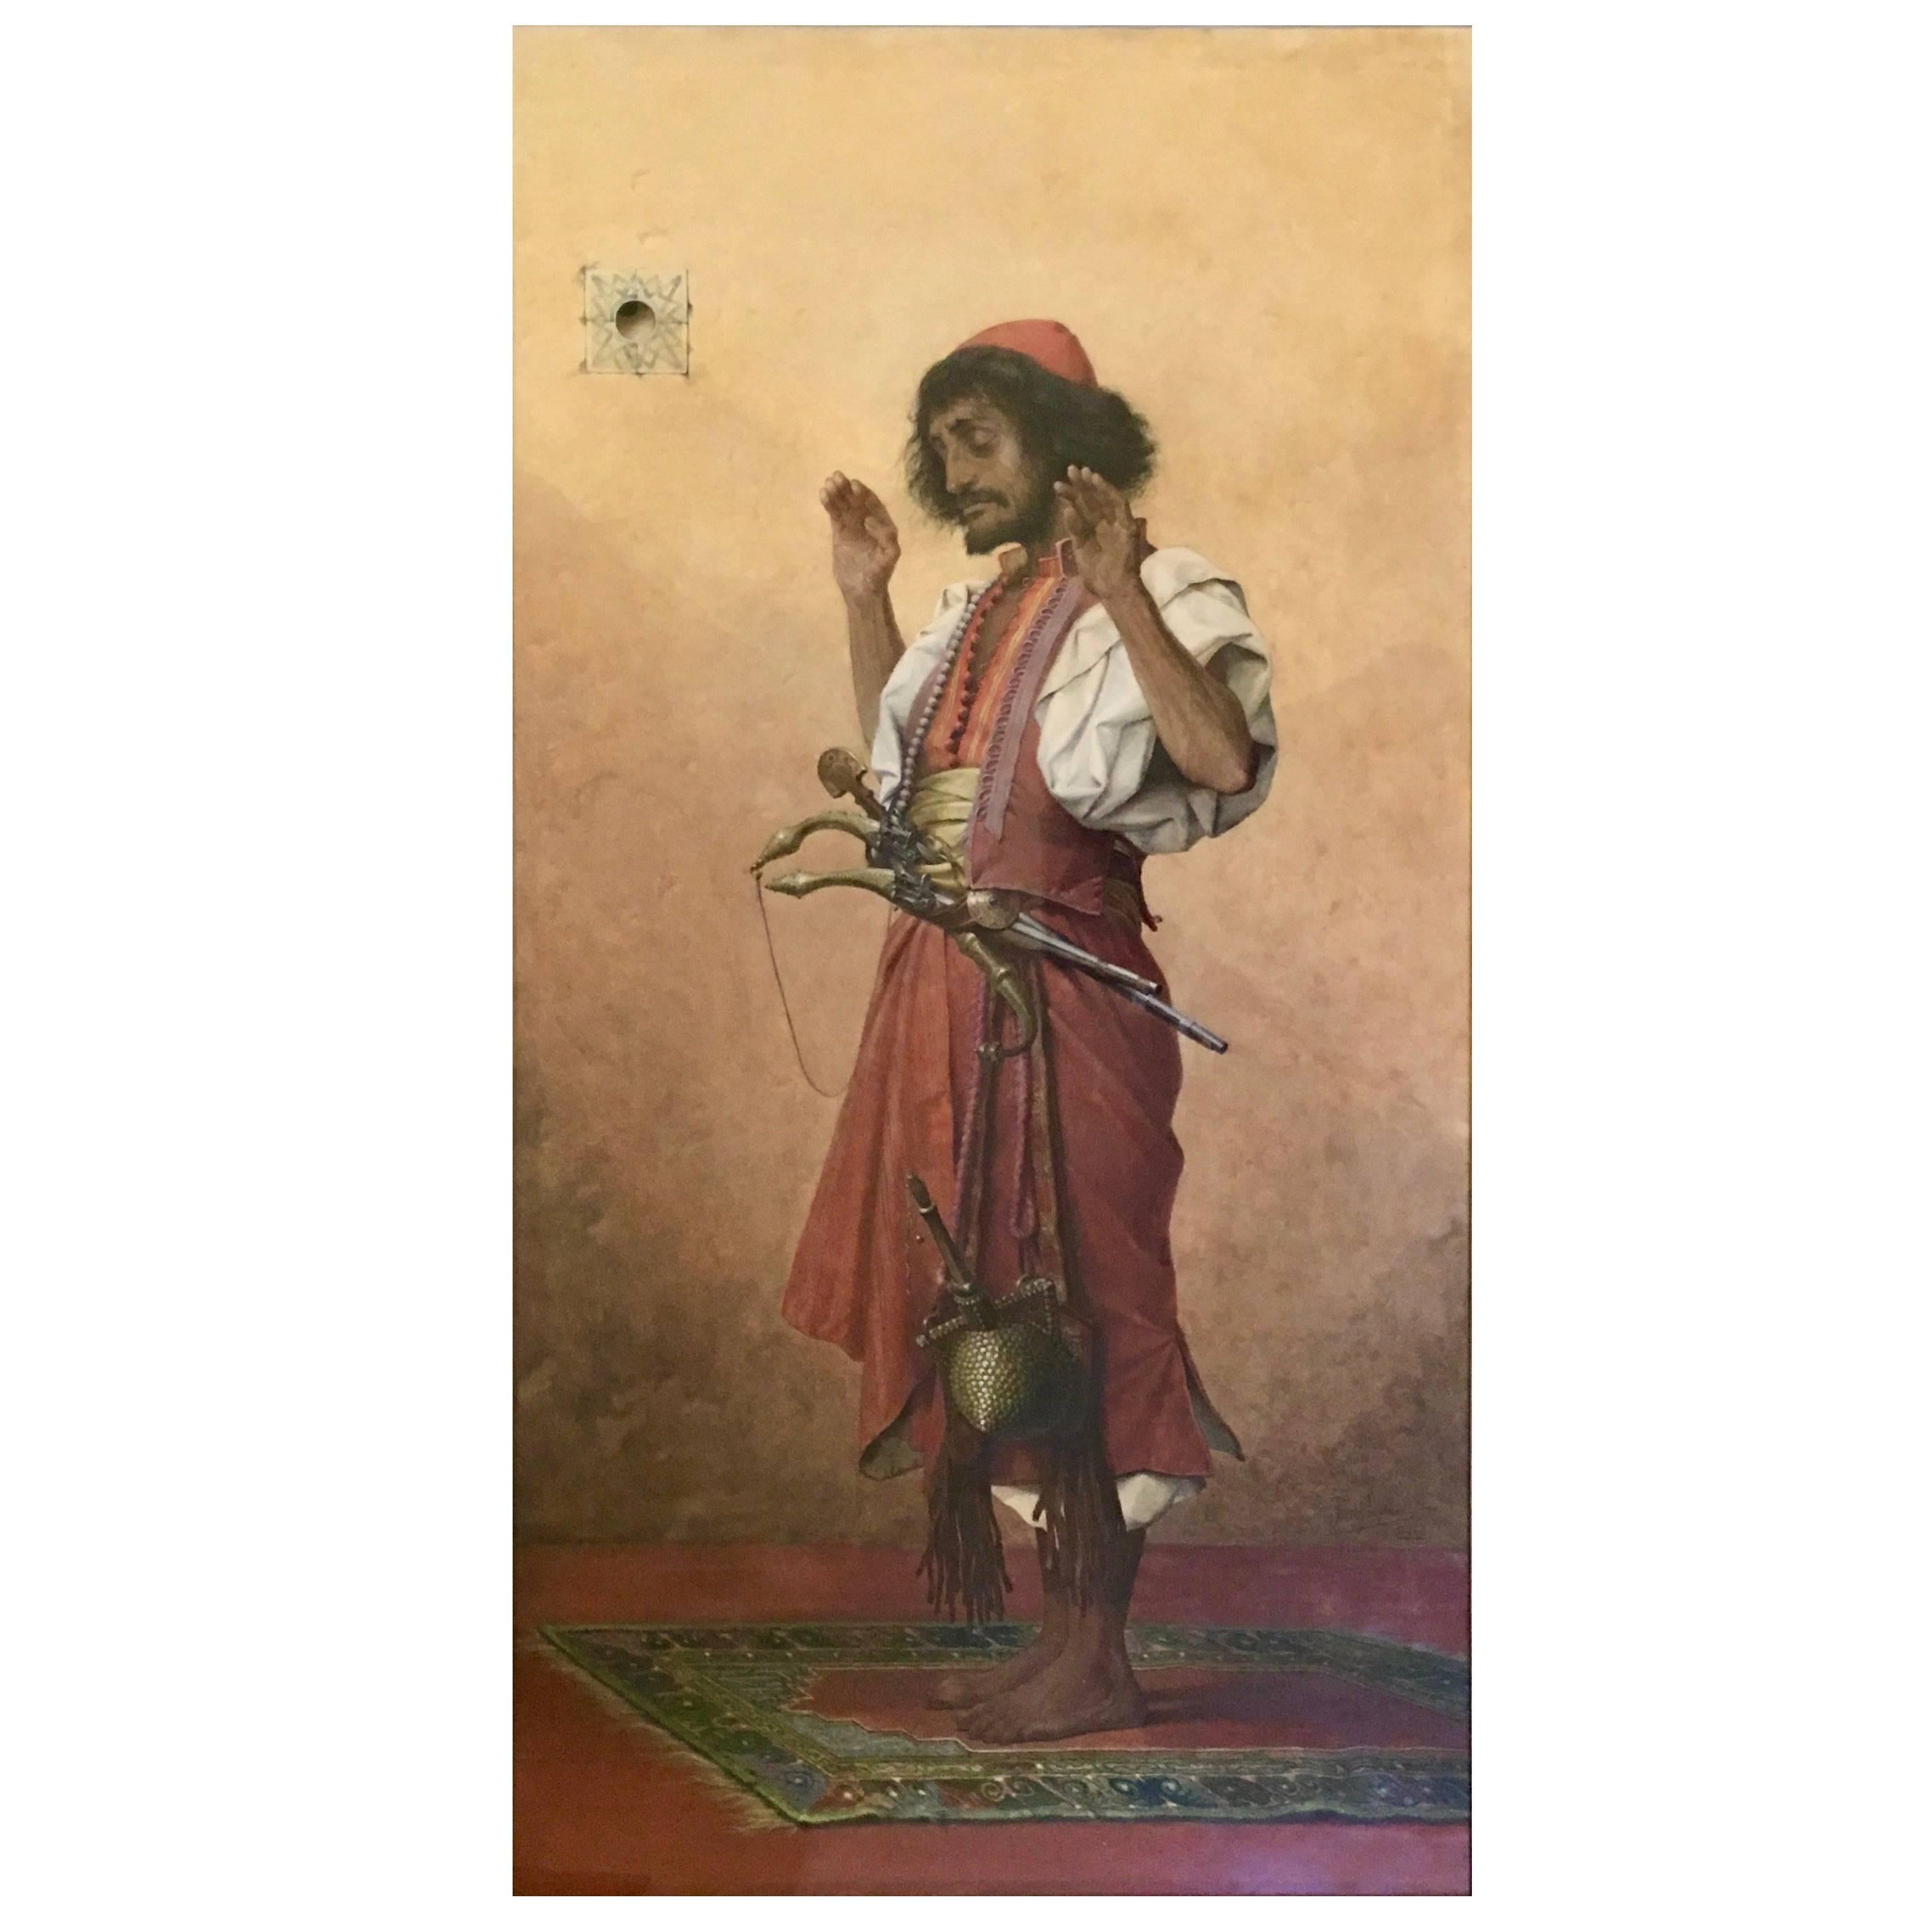 "Arab Soldier in Prayer" par le peintre belge Thophile Lybaert - Belgique 1899